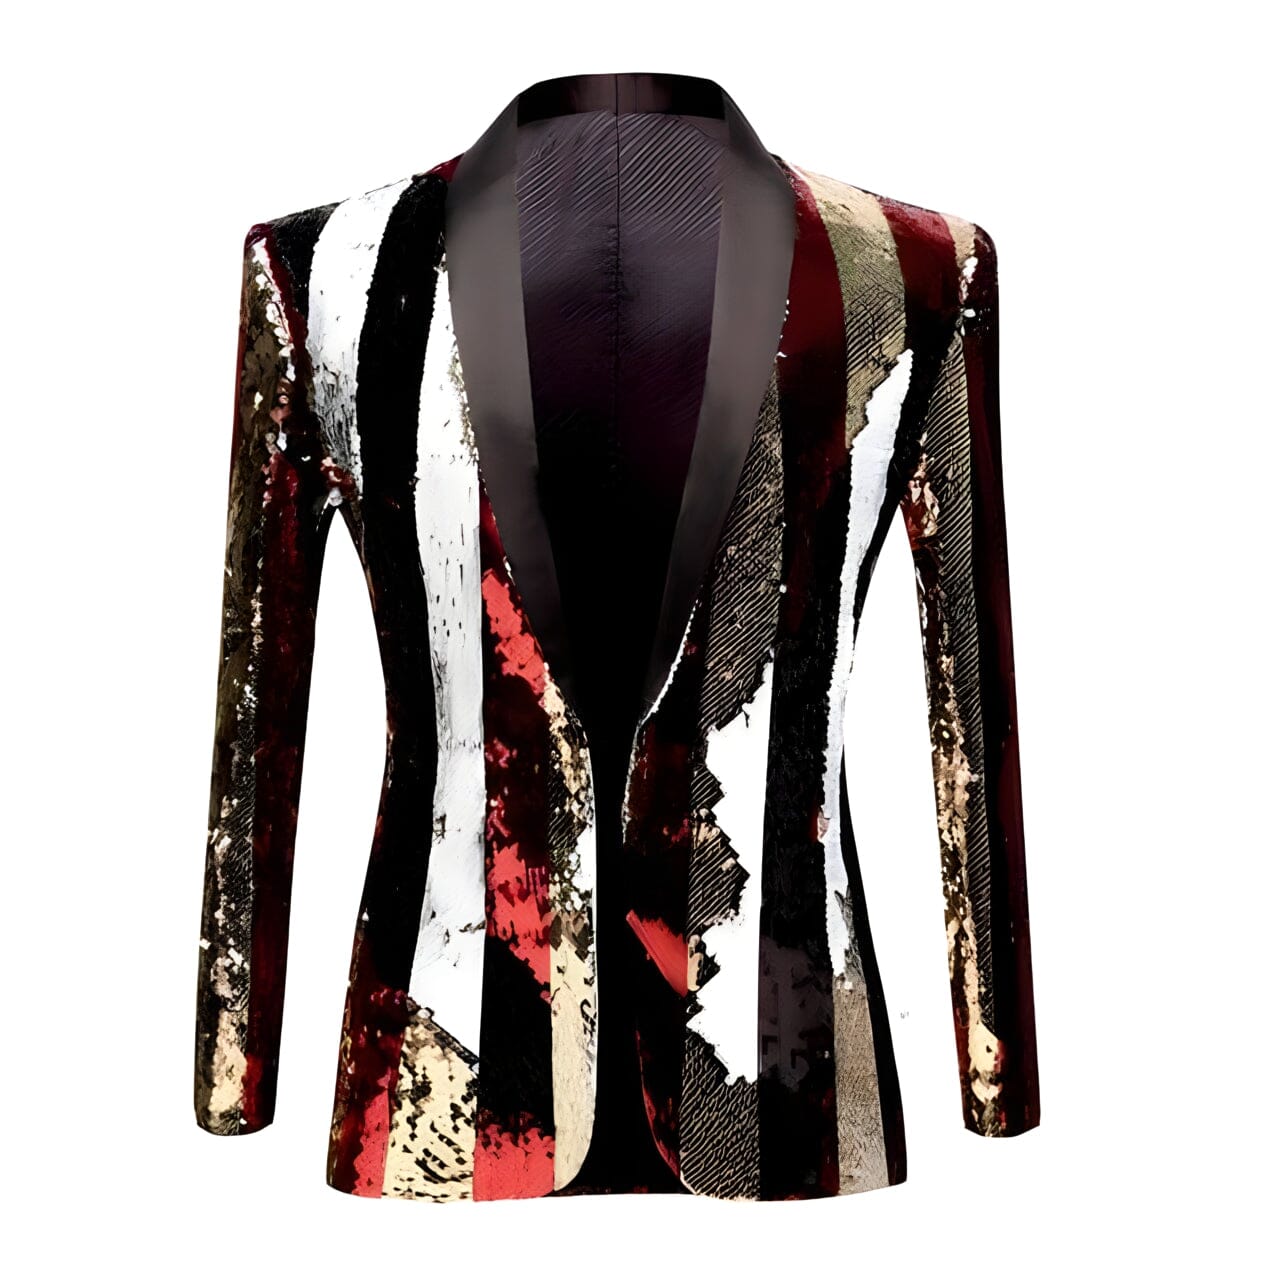 The Sebastian Striped Sequin Slim Fit Blazer Suit Jacket Shop5798684 Store XS 